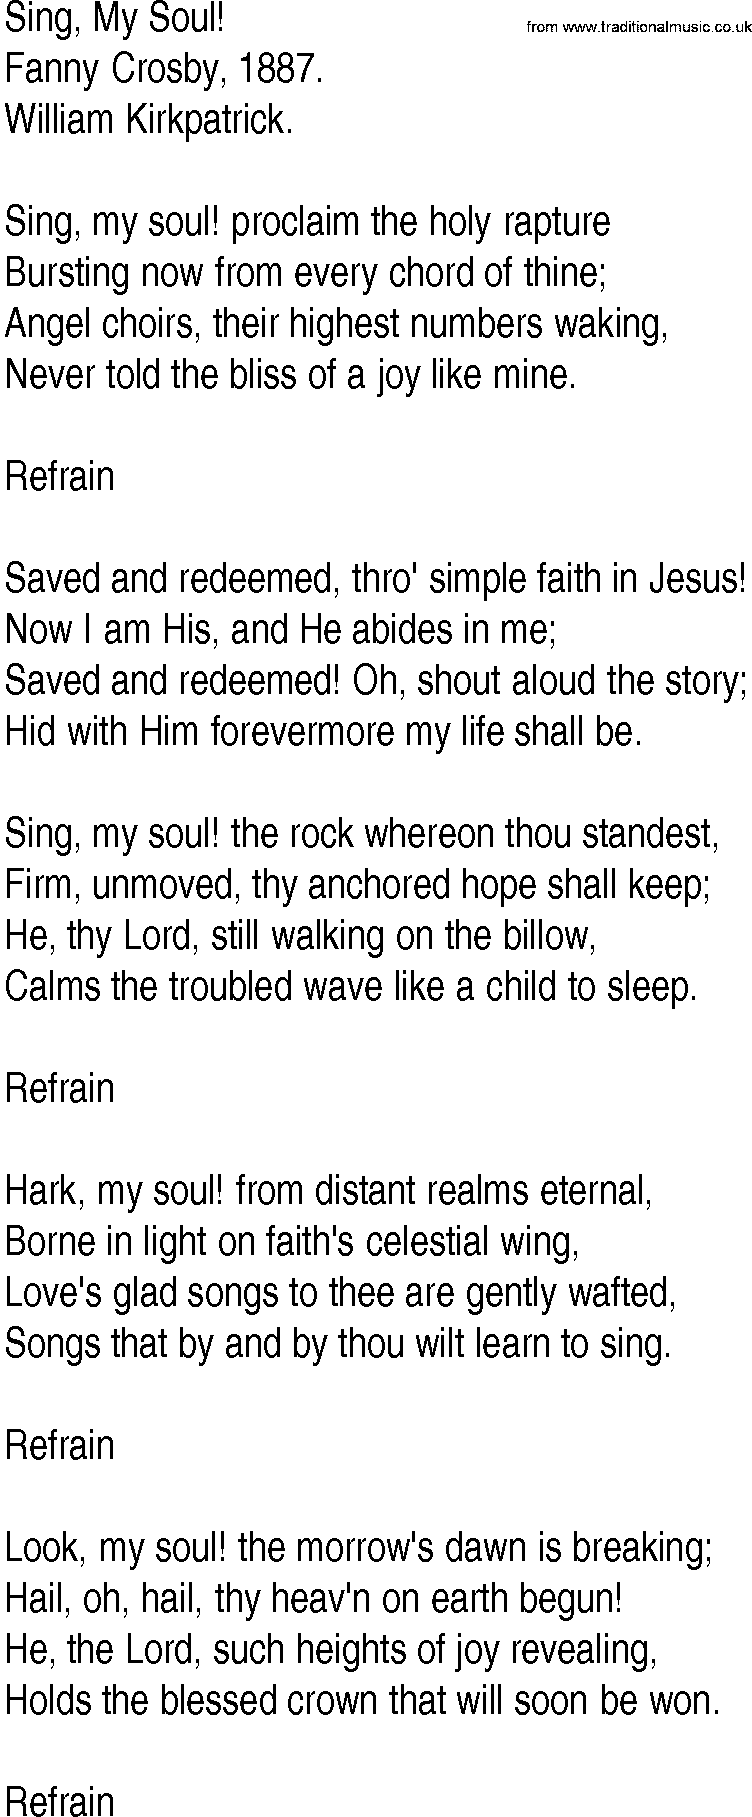 Hymn and Gospel Song: Sing, My Soul! by Fanny Crosby lyrics